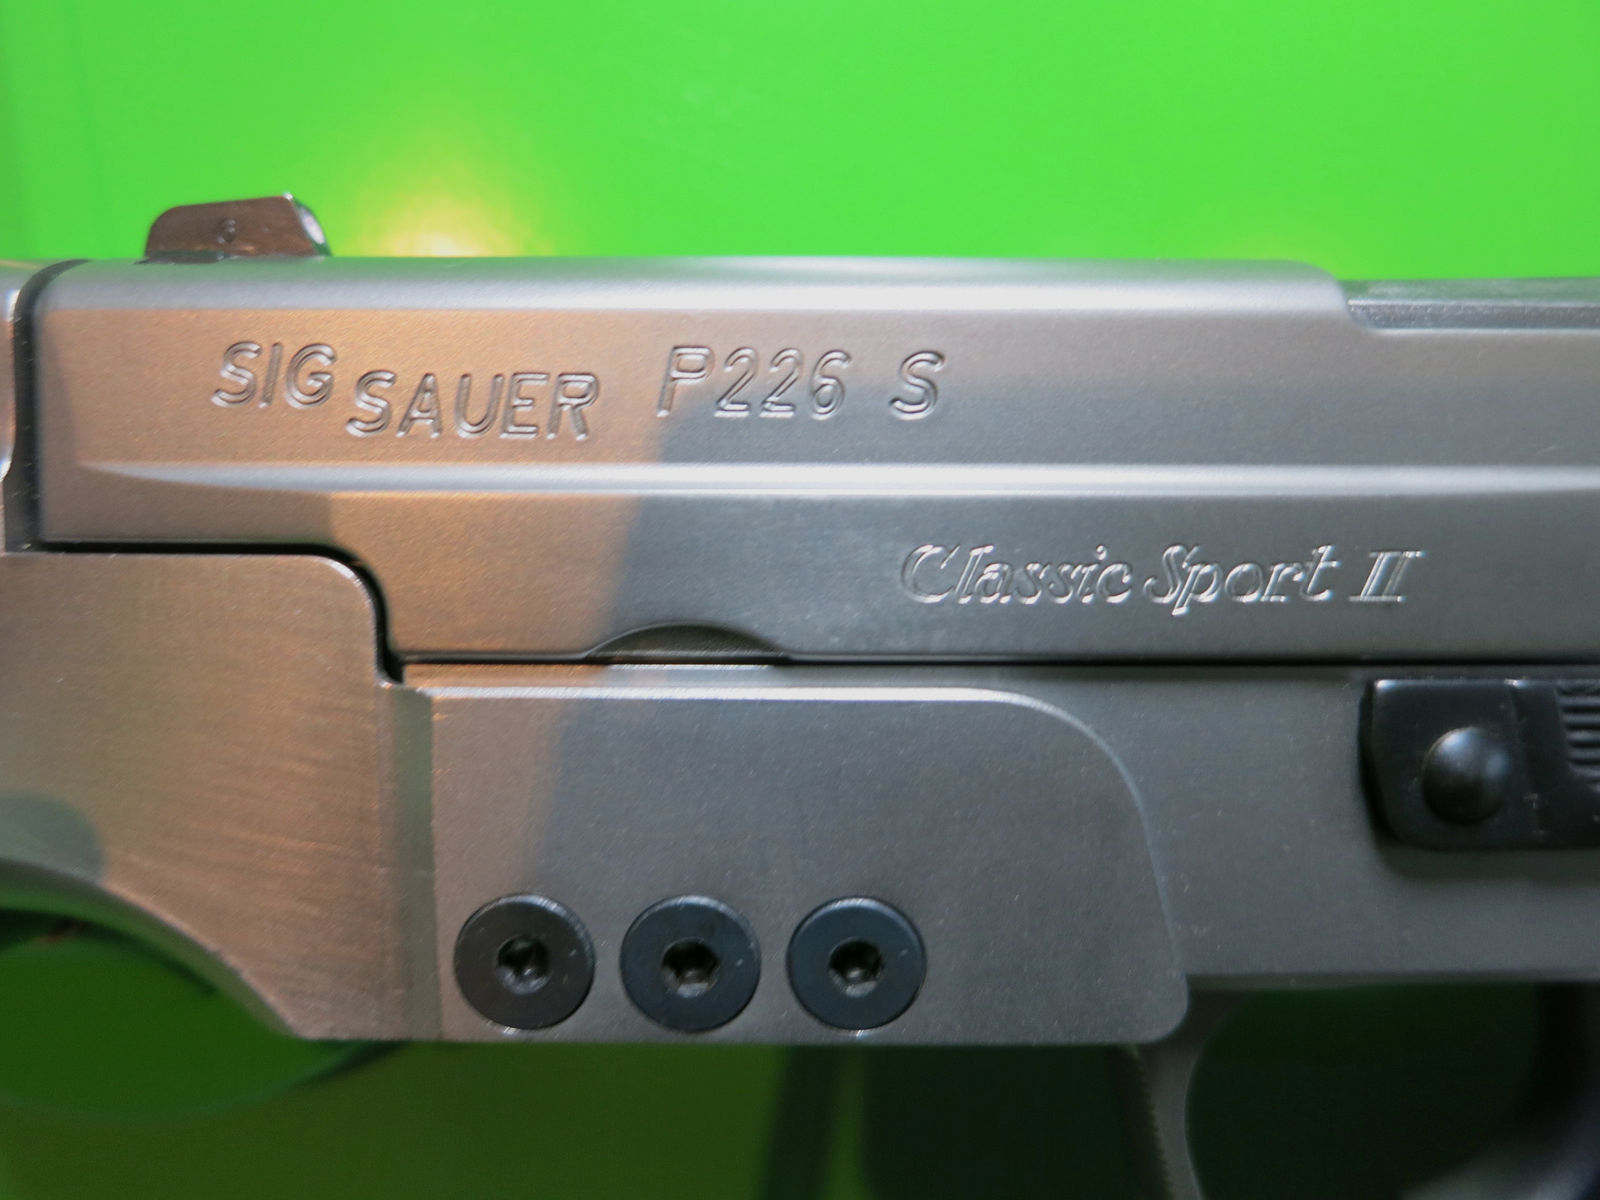 SIG Sauer P226 S Classic-Sport II, Sport-Matchvisier, deutsche  Fertigung Eckernförde, Kaliber 9mm Luger      #41 -RESERVIERT-